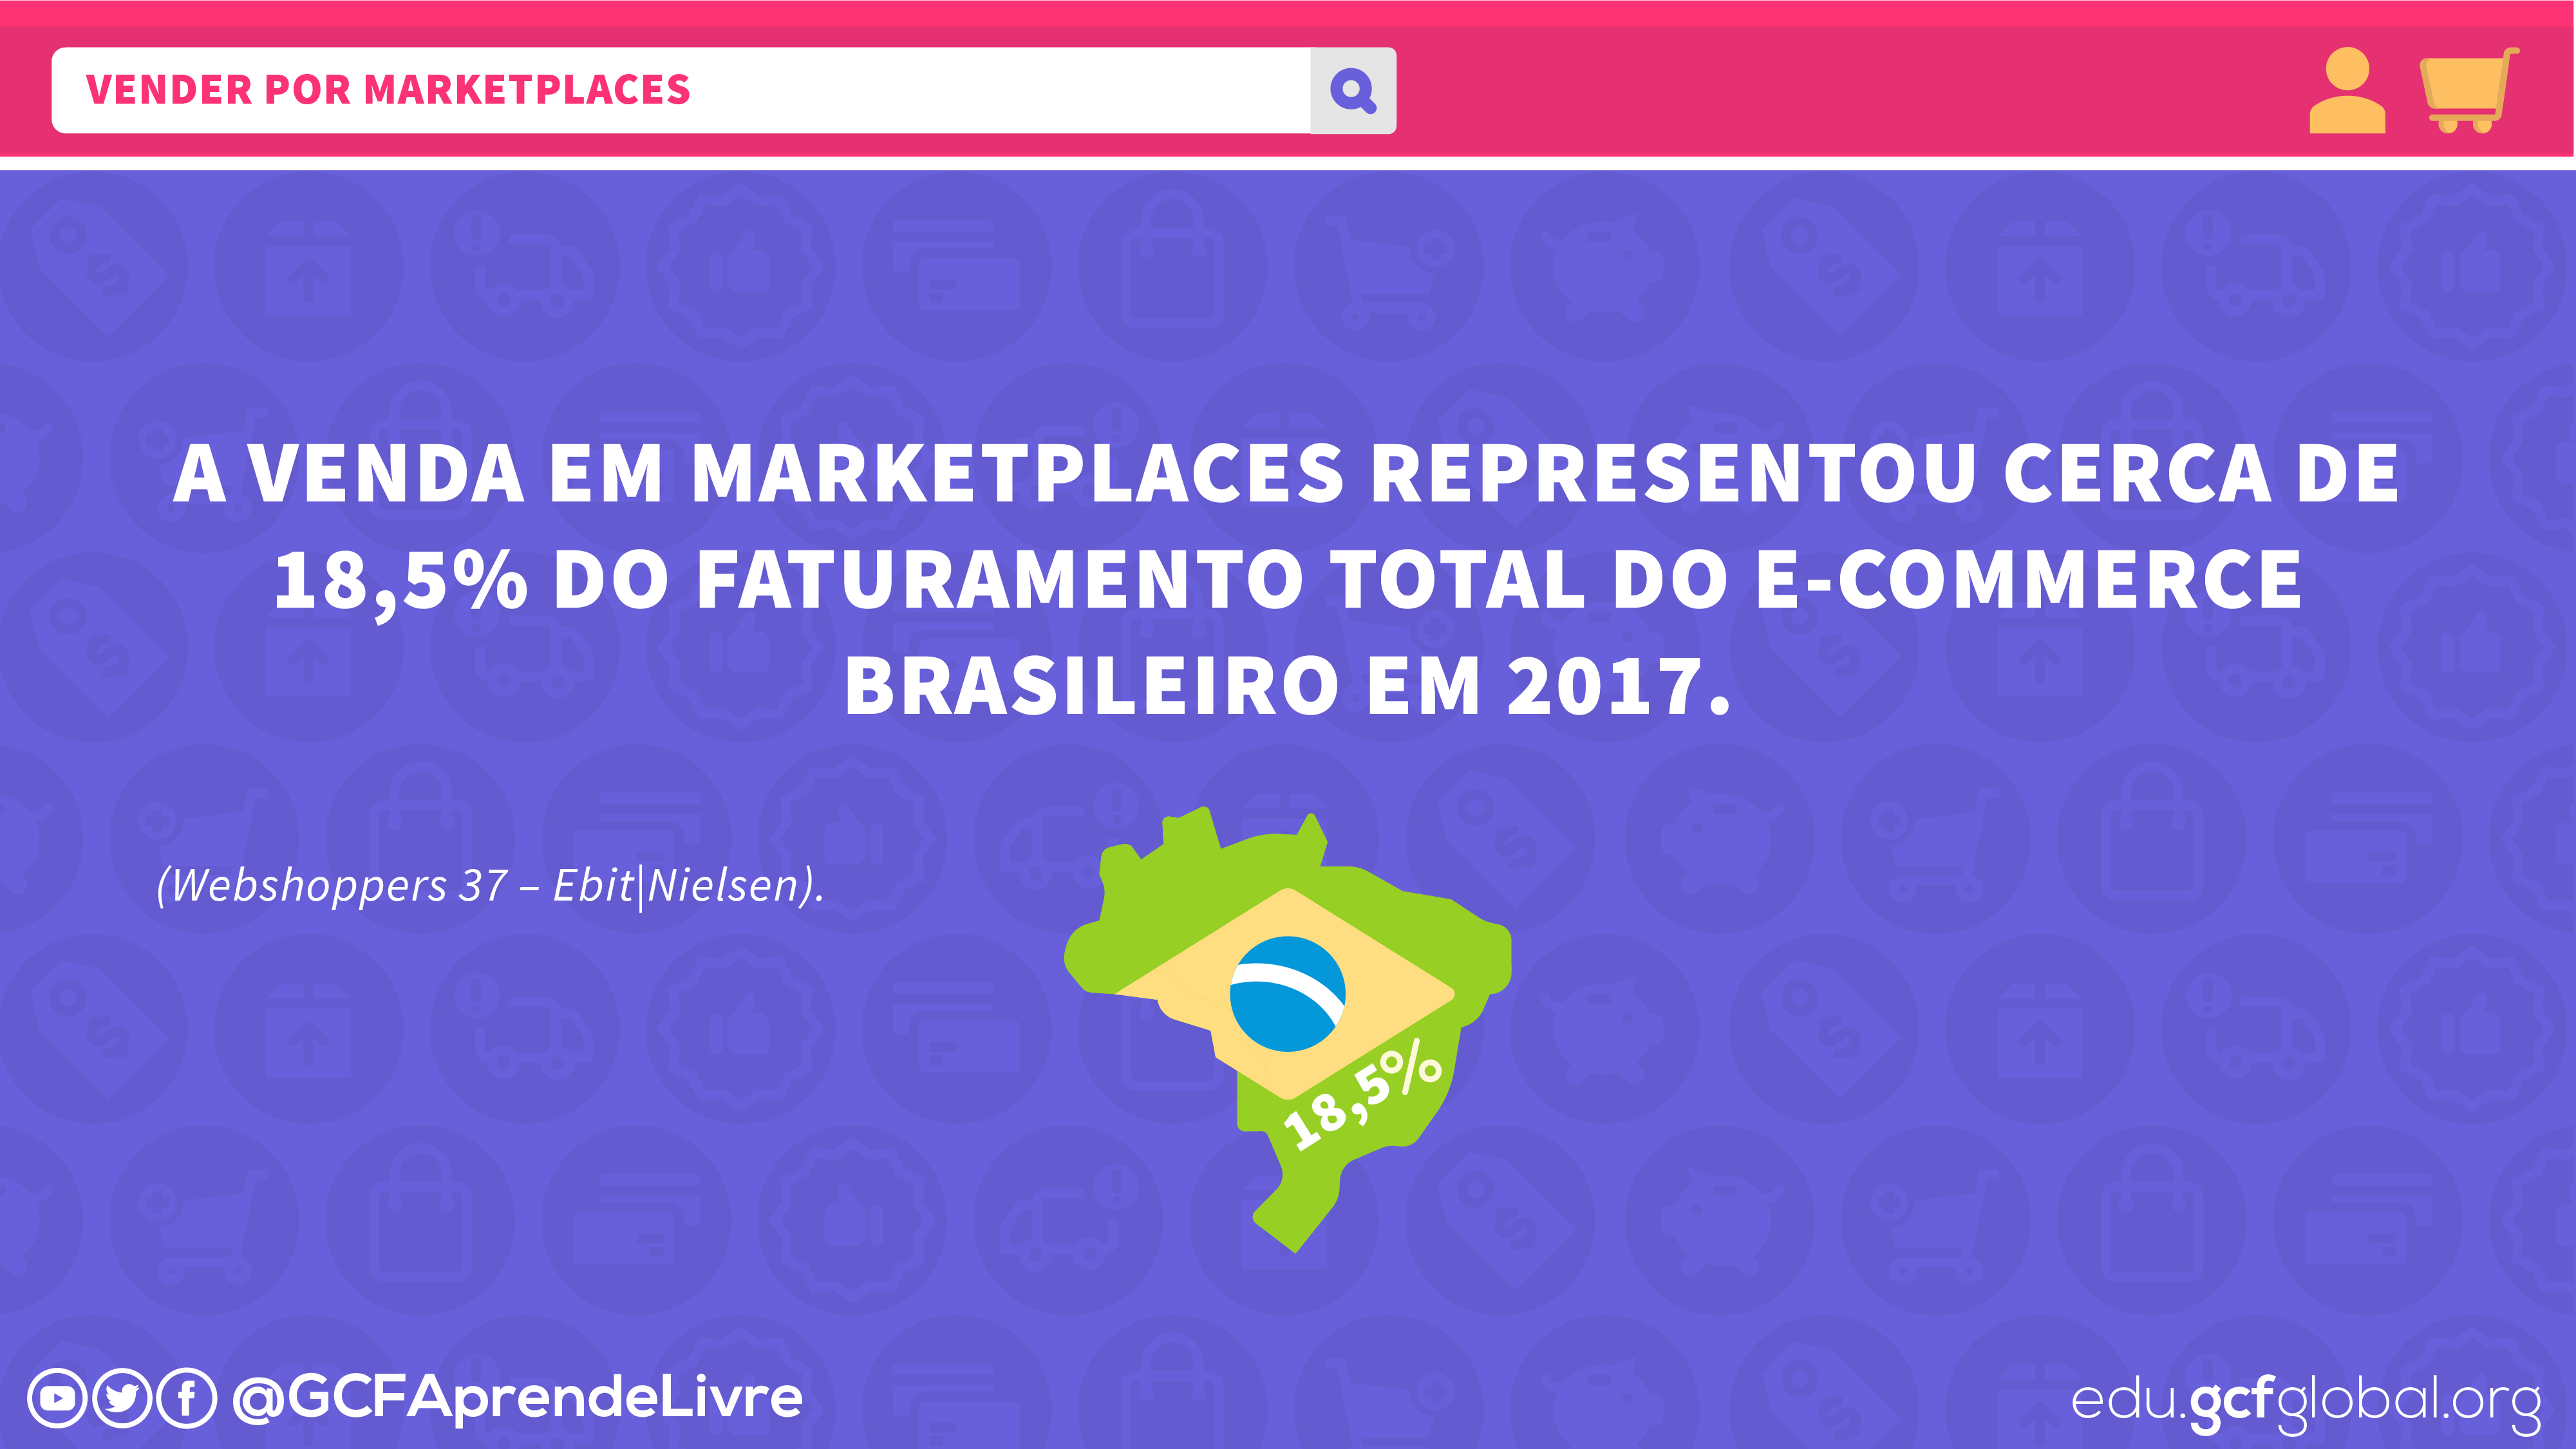 Imagem ilustrativa representatividade dos marketplaces no ecommerce brasileiro